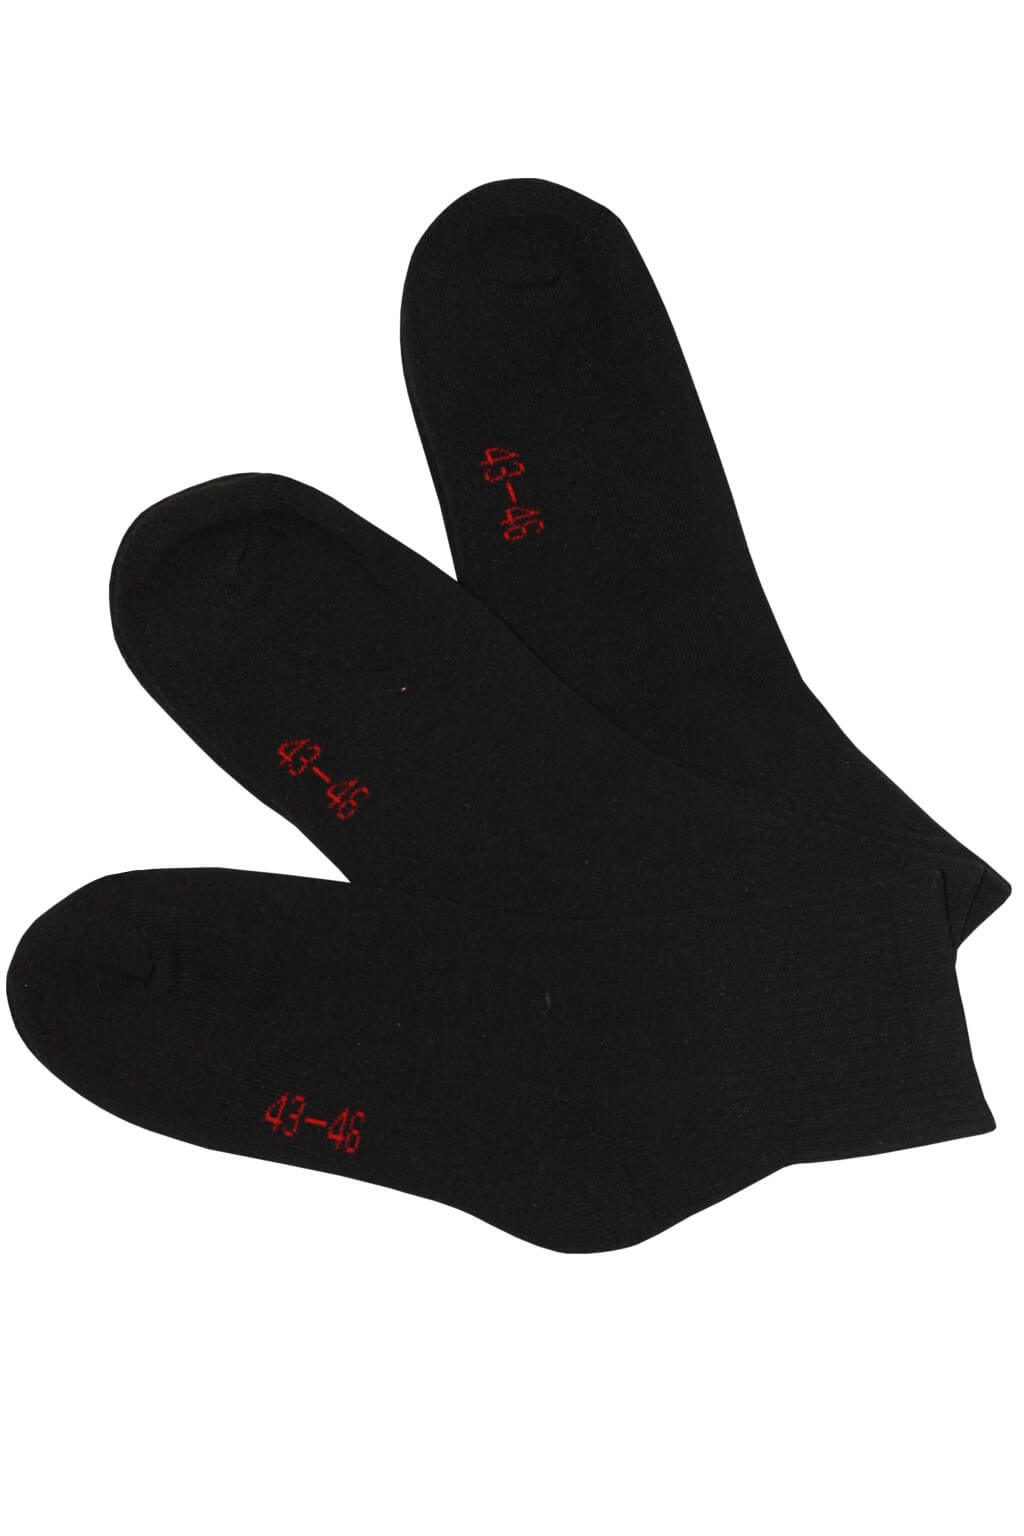 Sport froté ponožky MW3401B - 3páry 39-42 černá